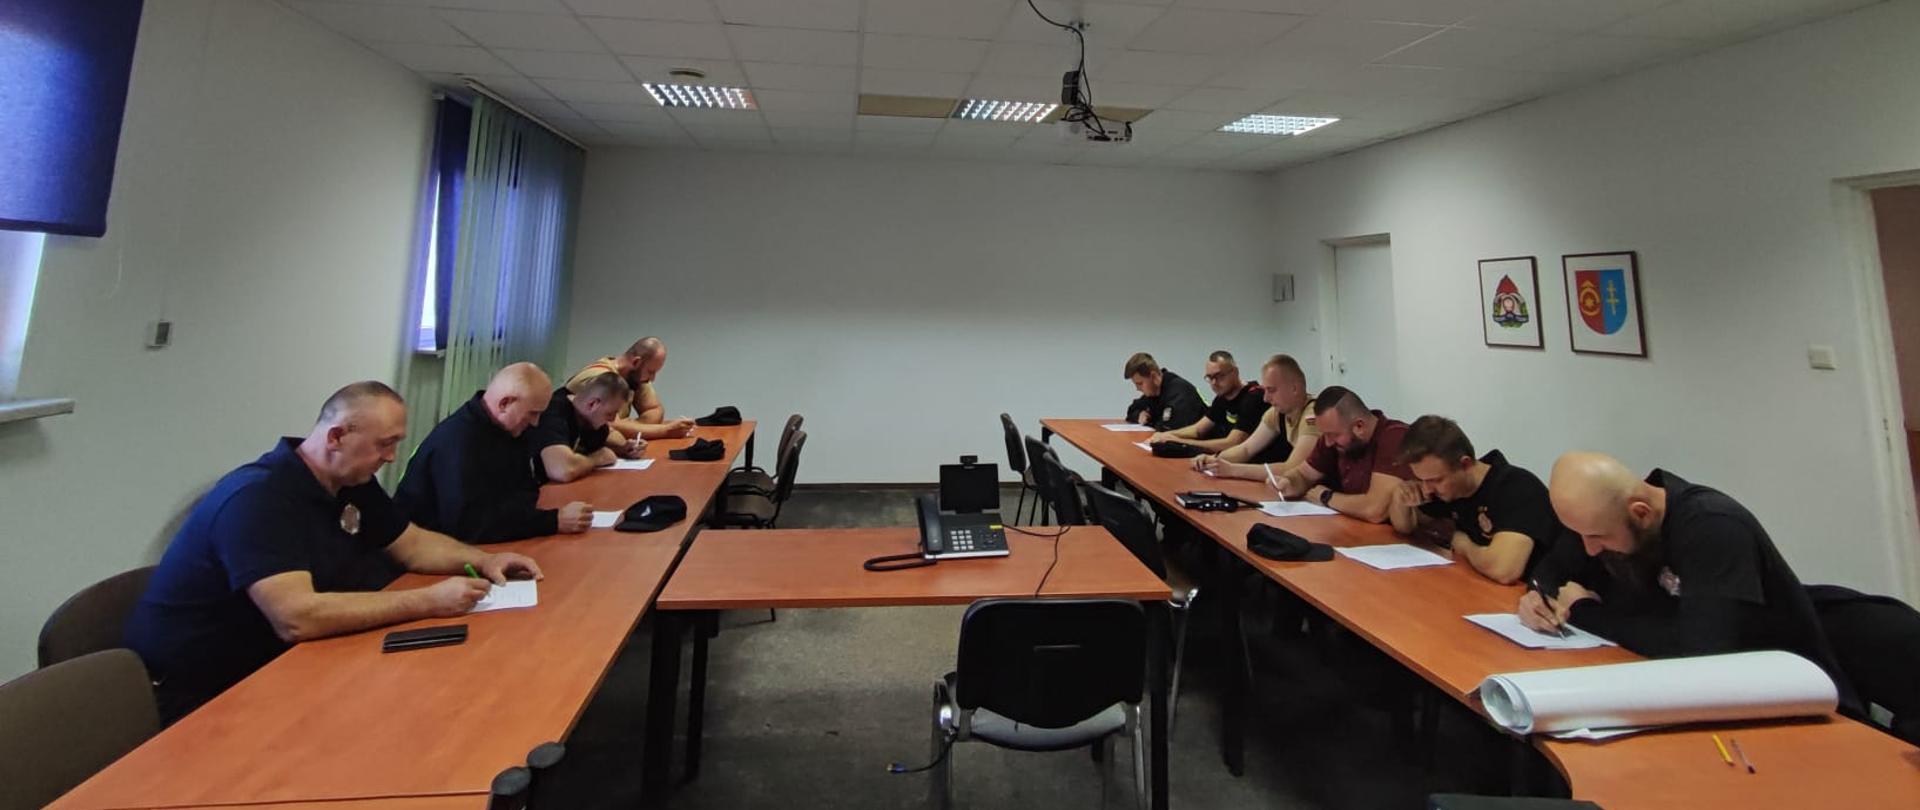 W sali konferencyjnej w KP PSP w Ostrowcu Św. przy stolikach siedzą druhowie OSP, którzy piszą egzamin na dowódców OSP.